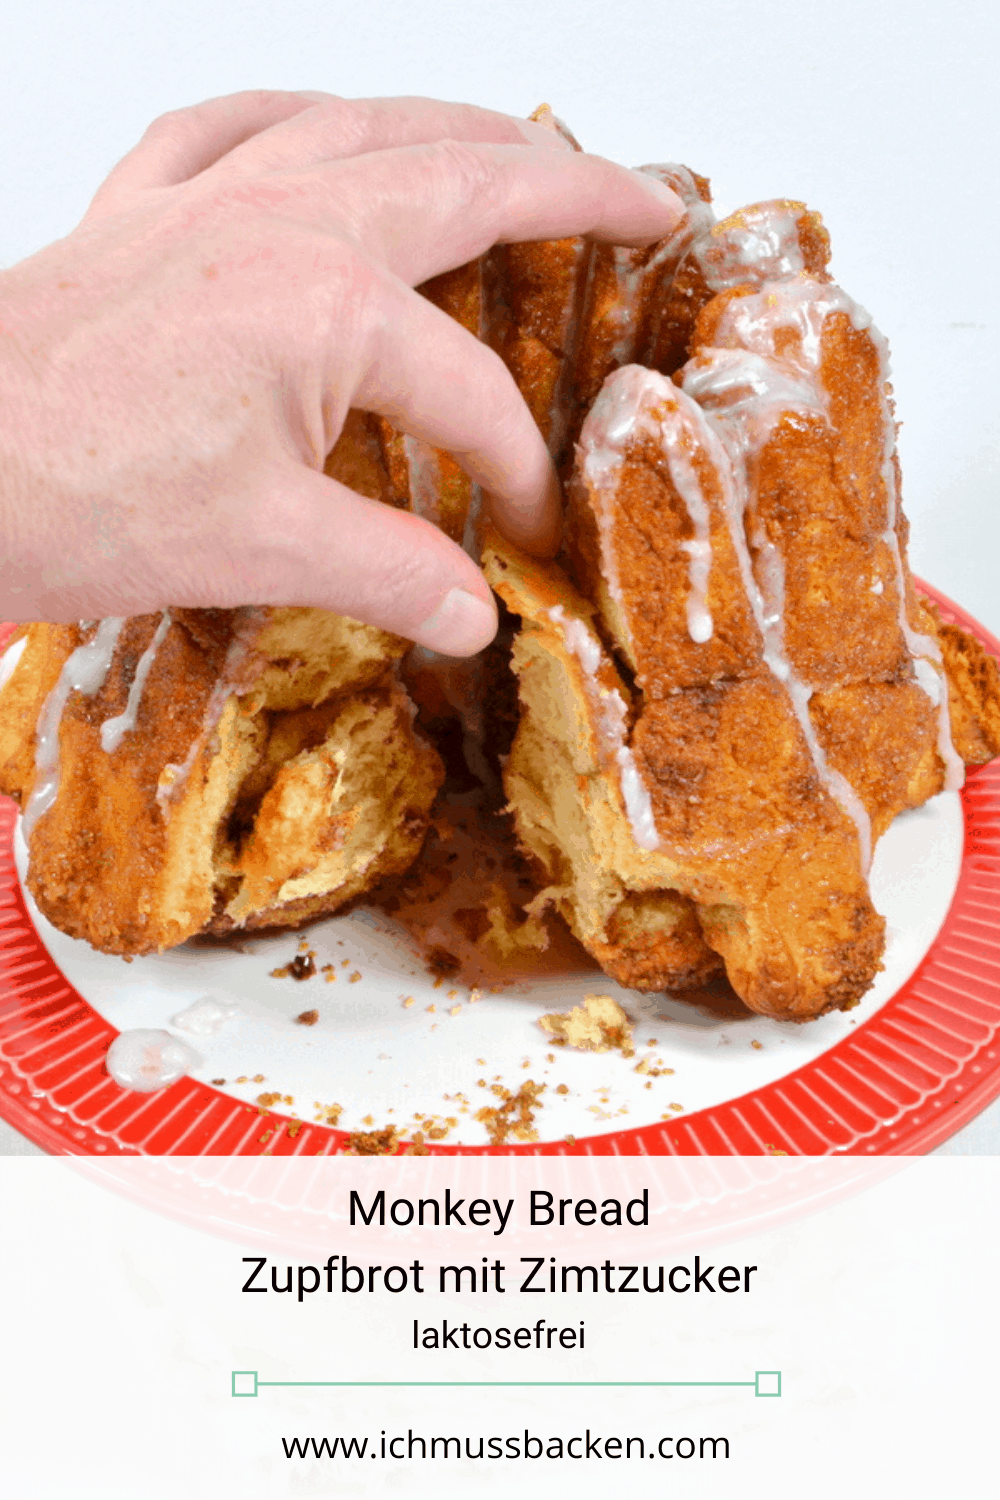 Monkey Bread - Zupfbrot mit Zimtzucker